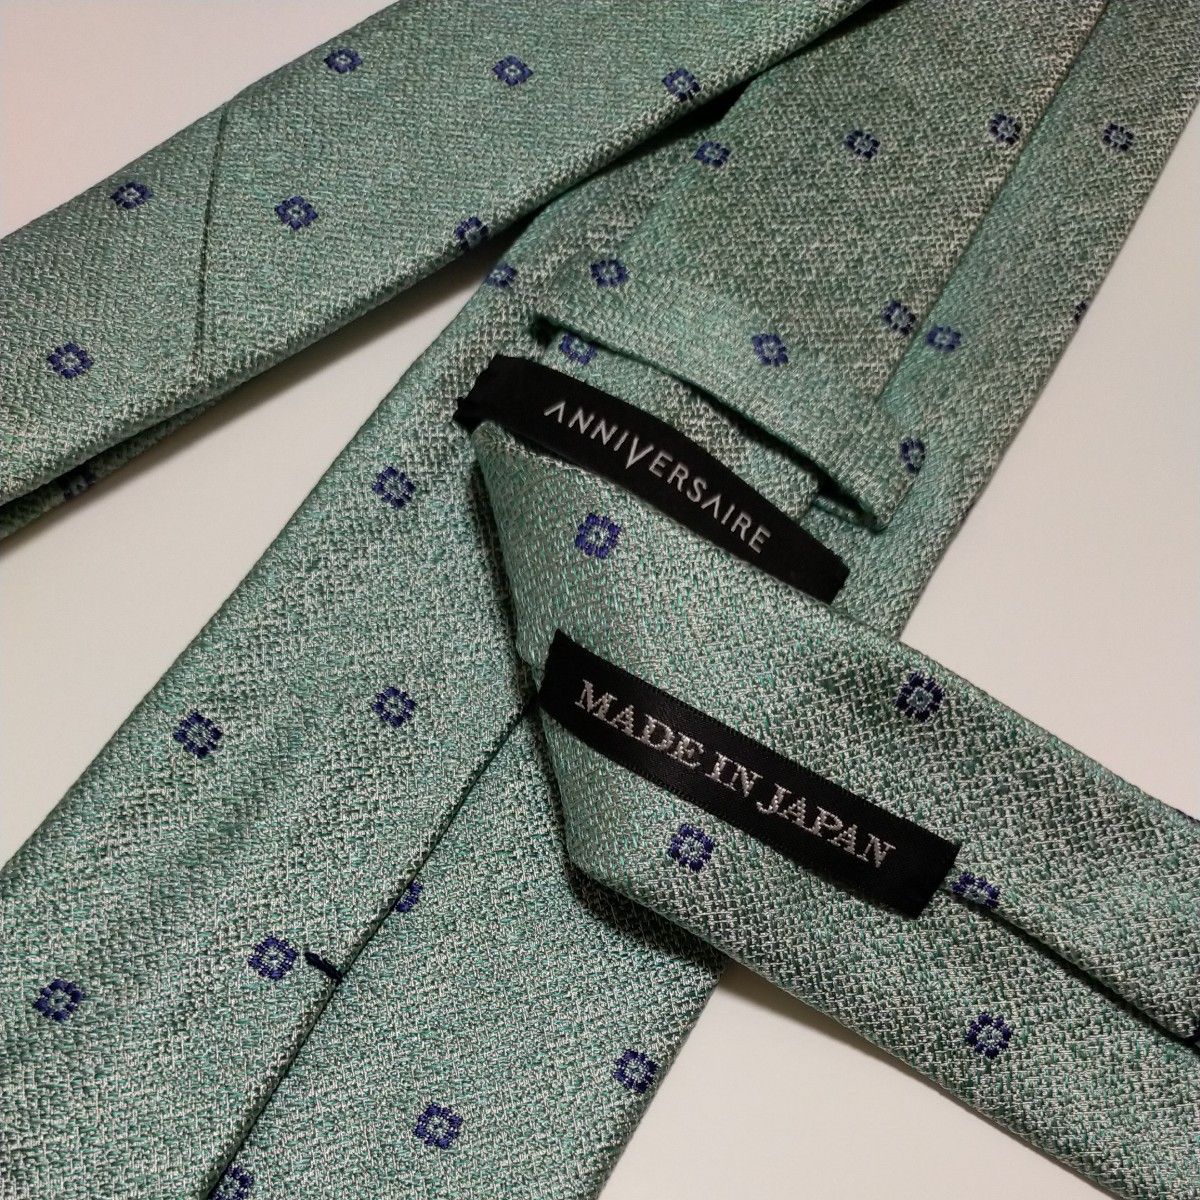  新品ブランドネクタイ 超お買い得品！高品質ネクタイ 日本製 シルク100% 超特価！タグ付き  高級ネクタイ 破格